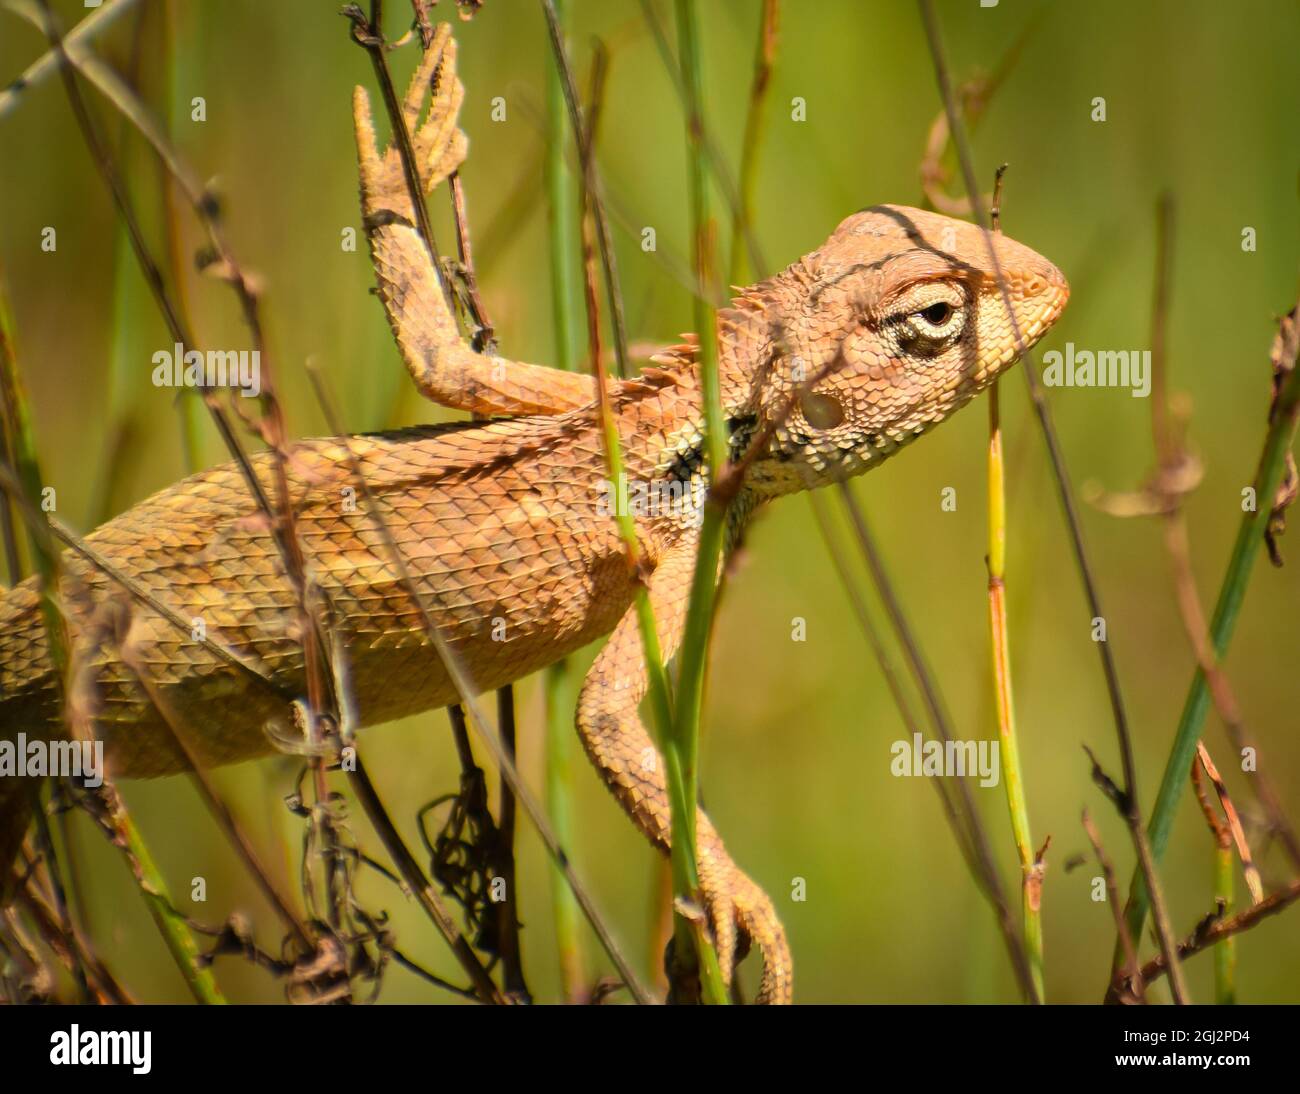 beautiful garden lizard on green grass.( calotes versicolor) Stock Photo